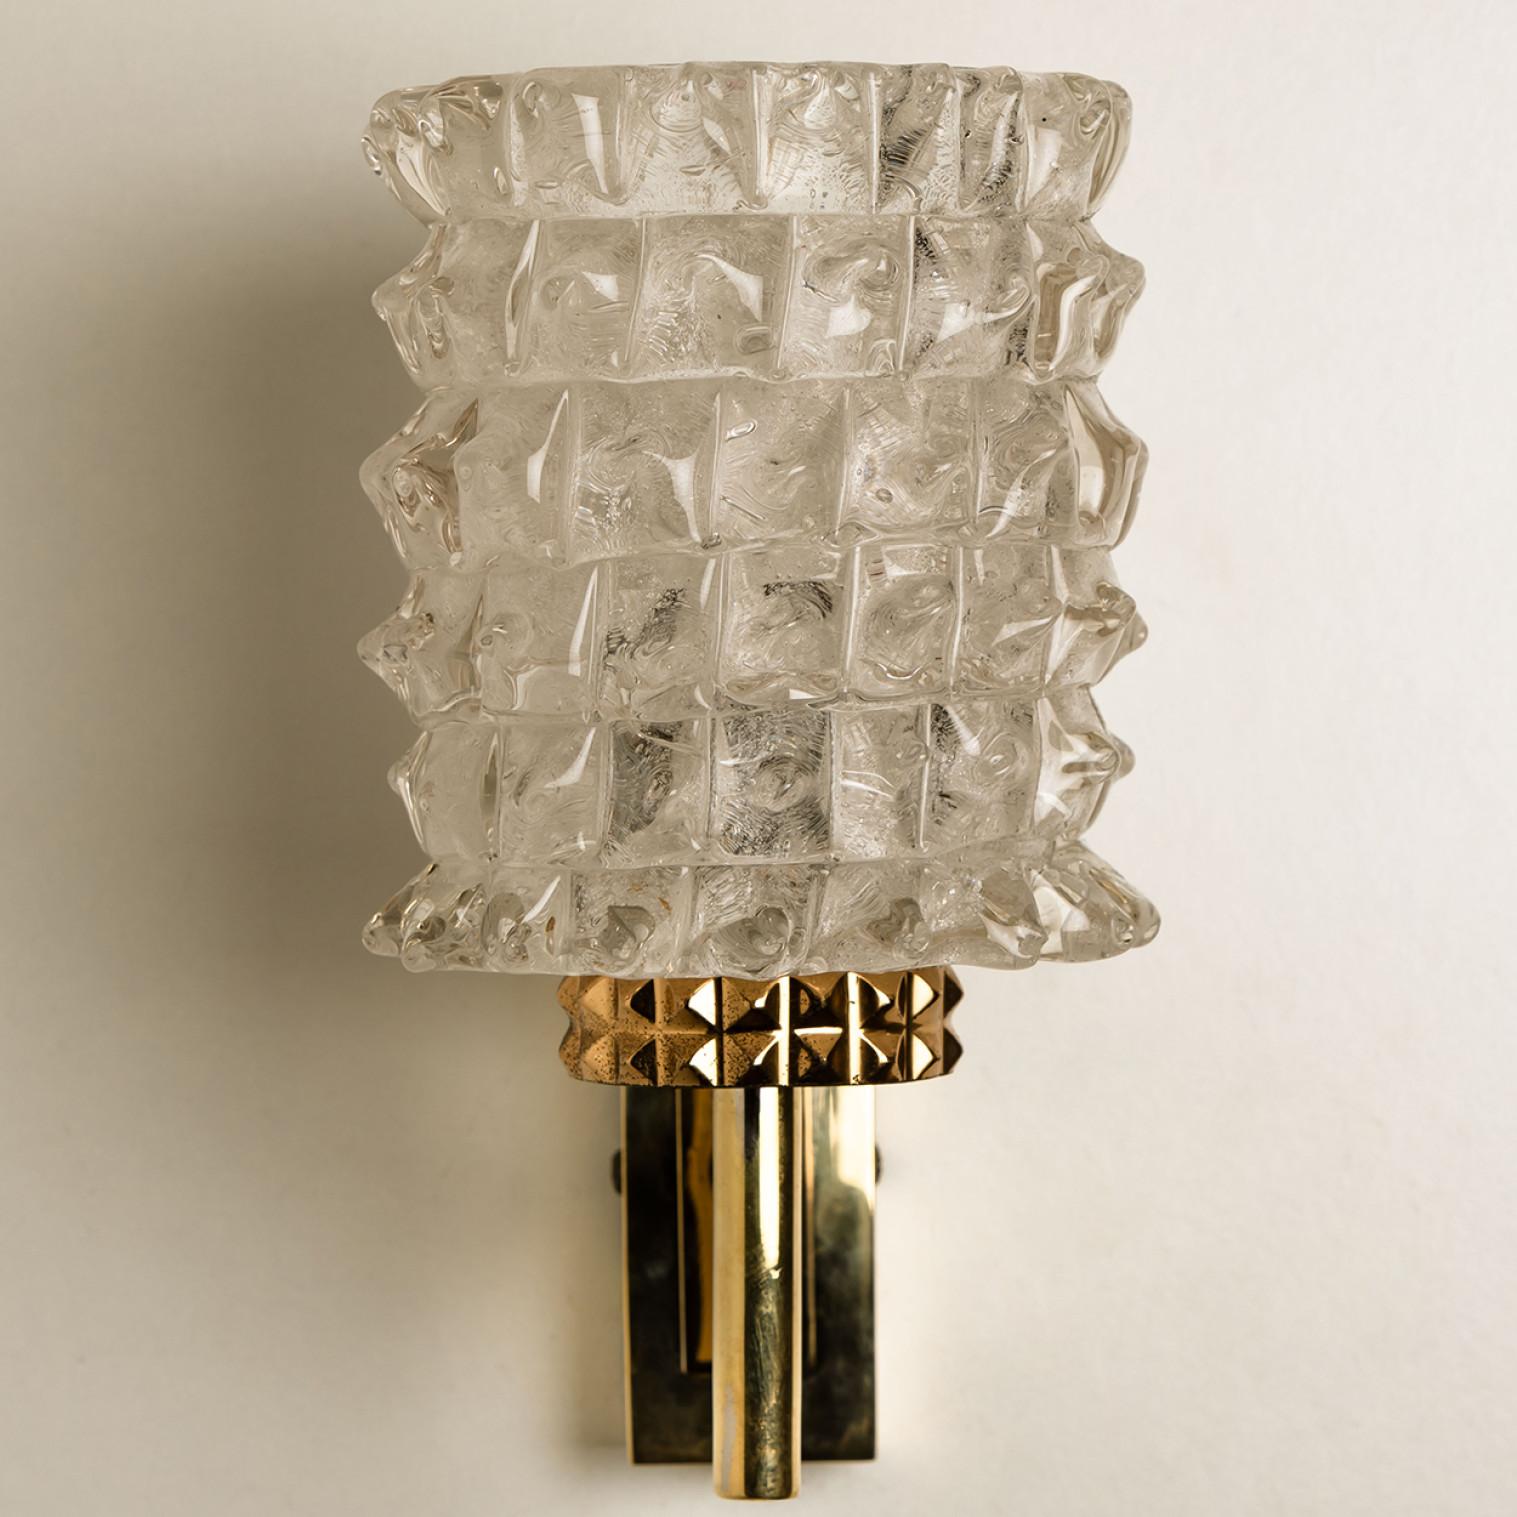 Hillebrand Brass Glass Wall Light Fixtures, 1970s For Sale 3